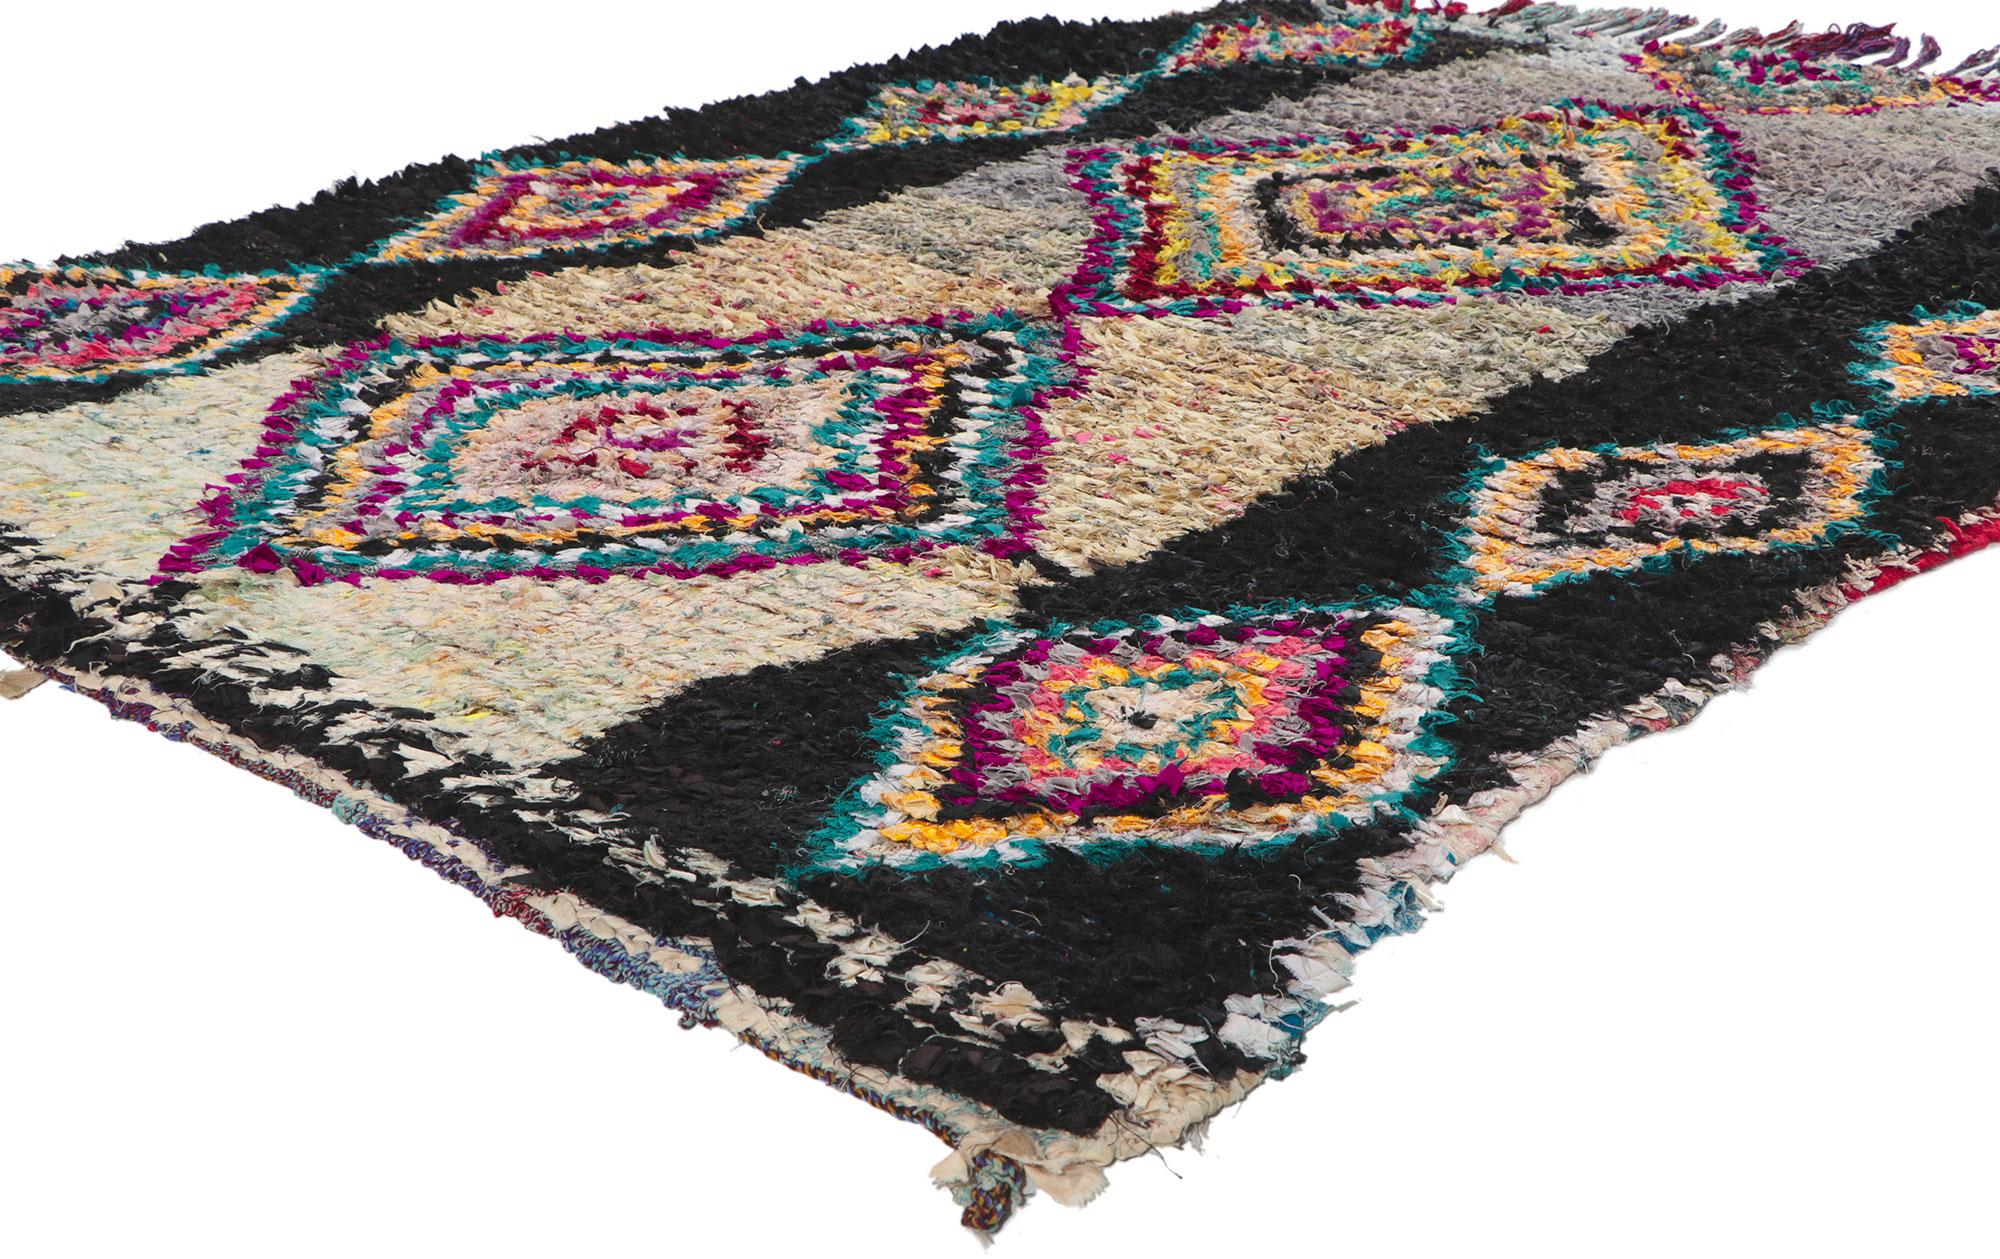 78393 Vintage Moroccan Rag rug, Berber Boucherouite 05'04 x 08'00. Avec son charme nomade, ses détails et sa texture incroyables, ce tapis de chiffon marocain vintage noué à la main est une vision captivante de la beauté tissée. Le motif de diamants